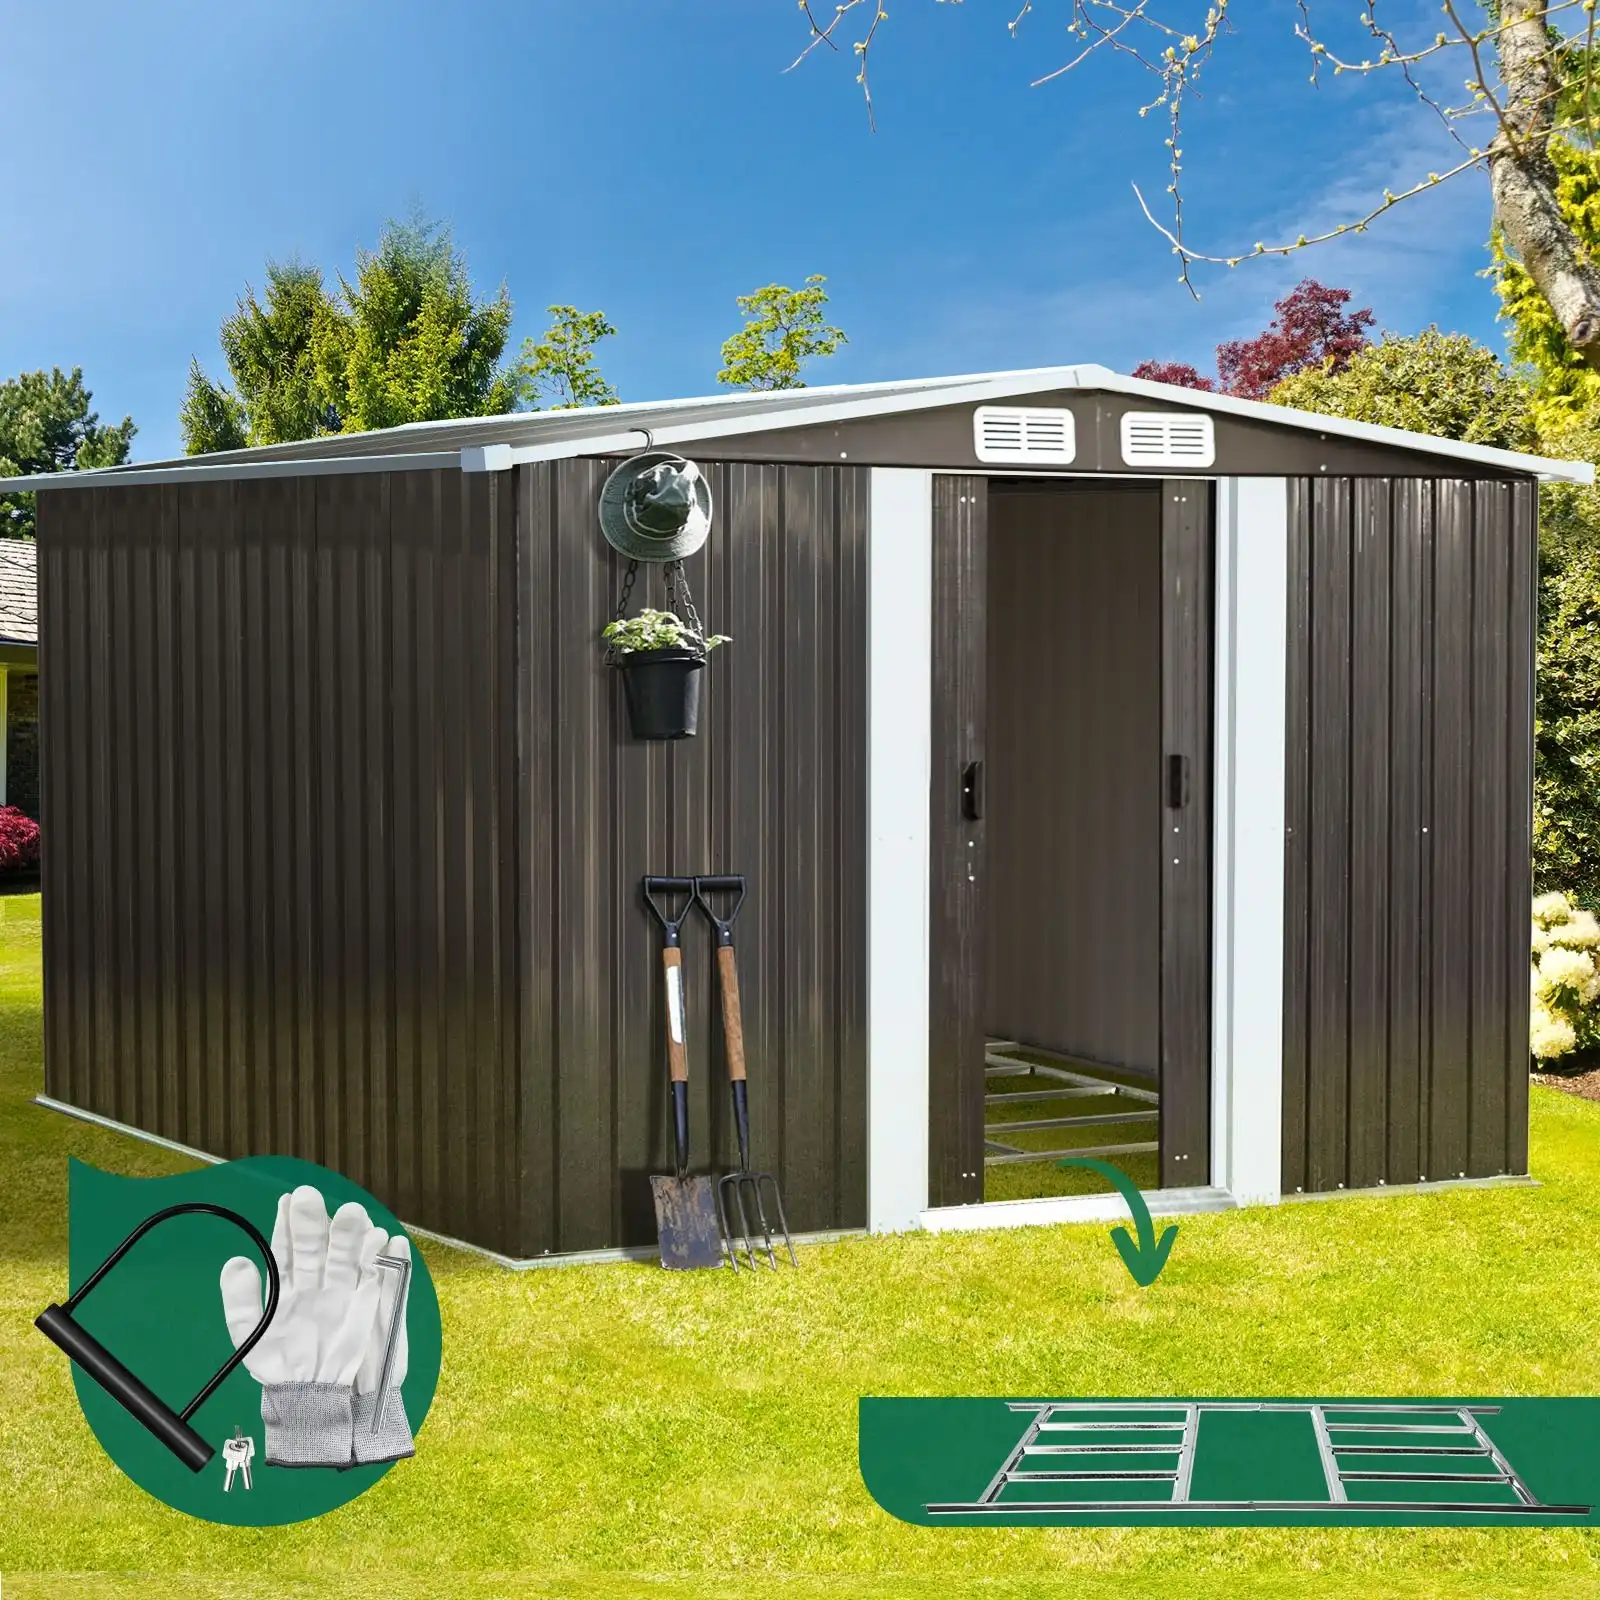 Livsip Garden Shed Outdoor Storage Sheds 2.57x2.05M Workshop Cabin Metal Base